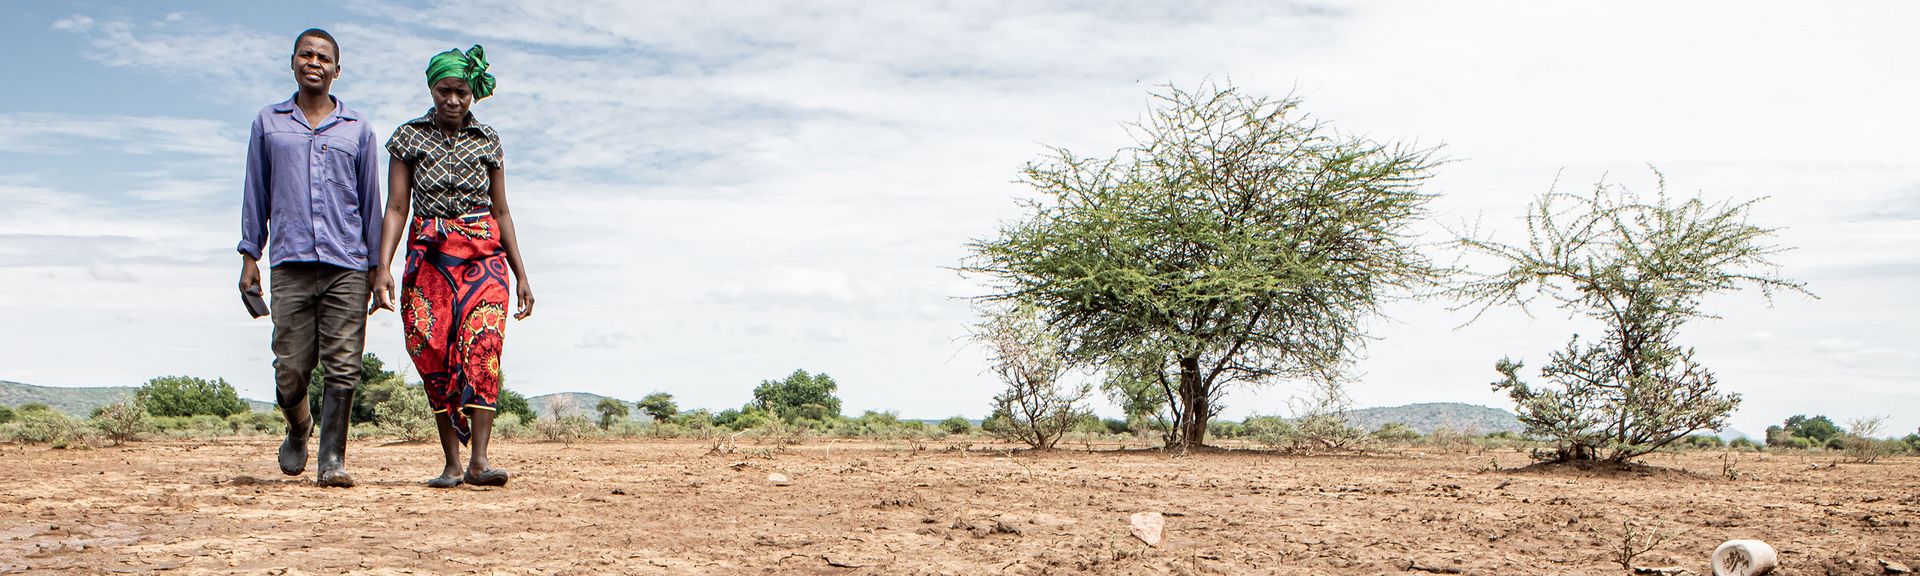 Kuda Gudyanga (46) und seine Frau NoMatter (39) in Nyanyadzi, Chimanimani an der Ostgrenze Simbabwes. Die Region hat eine schwere Dürre erlebt und ist vom Klimawandel stark betroffen. Dadurch sind die Kleinbauern von großen Verlusten bei der Ernte und dem Viehbestand bedroht.Projektpartner: Towards Sustainable Use of Resources Organisation (TSURO)